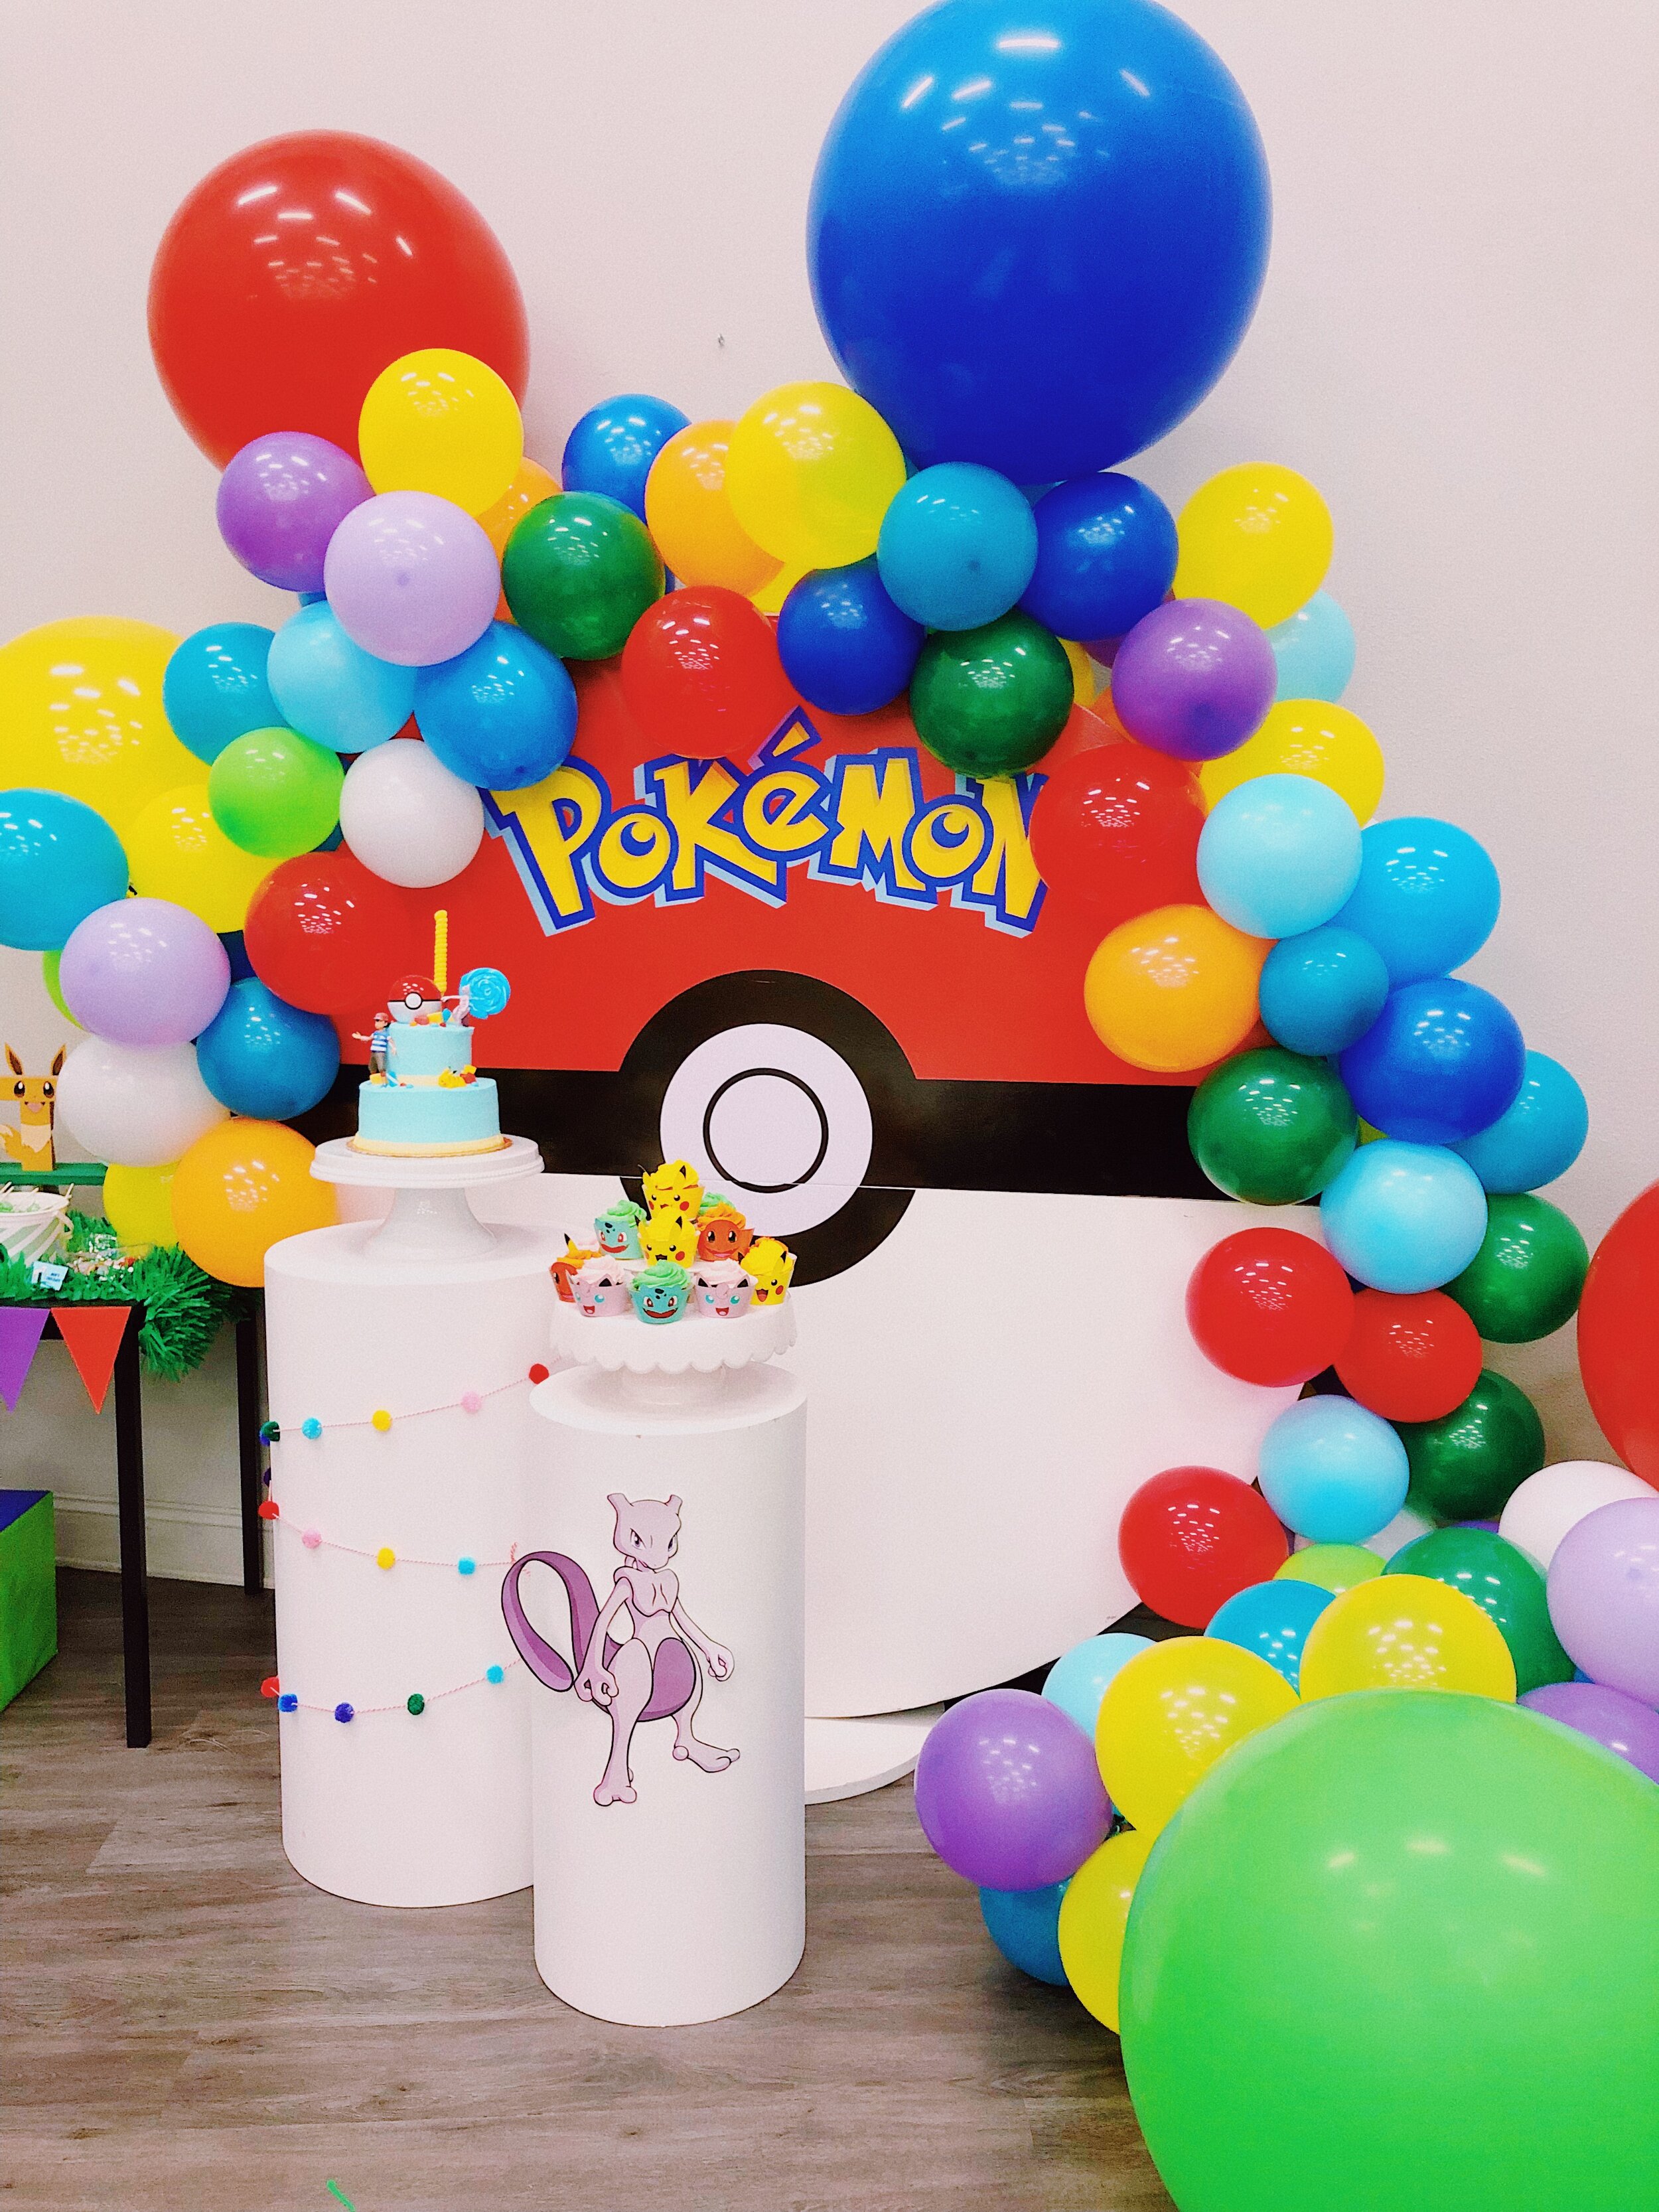 Pokemon Theme for a Kid's Birthday Party